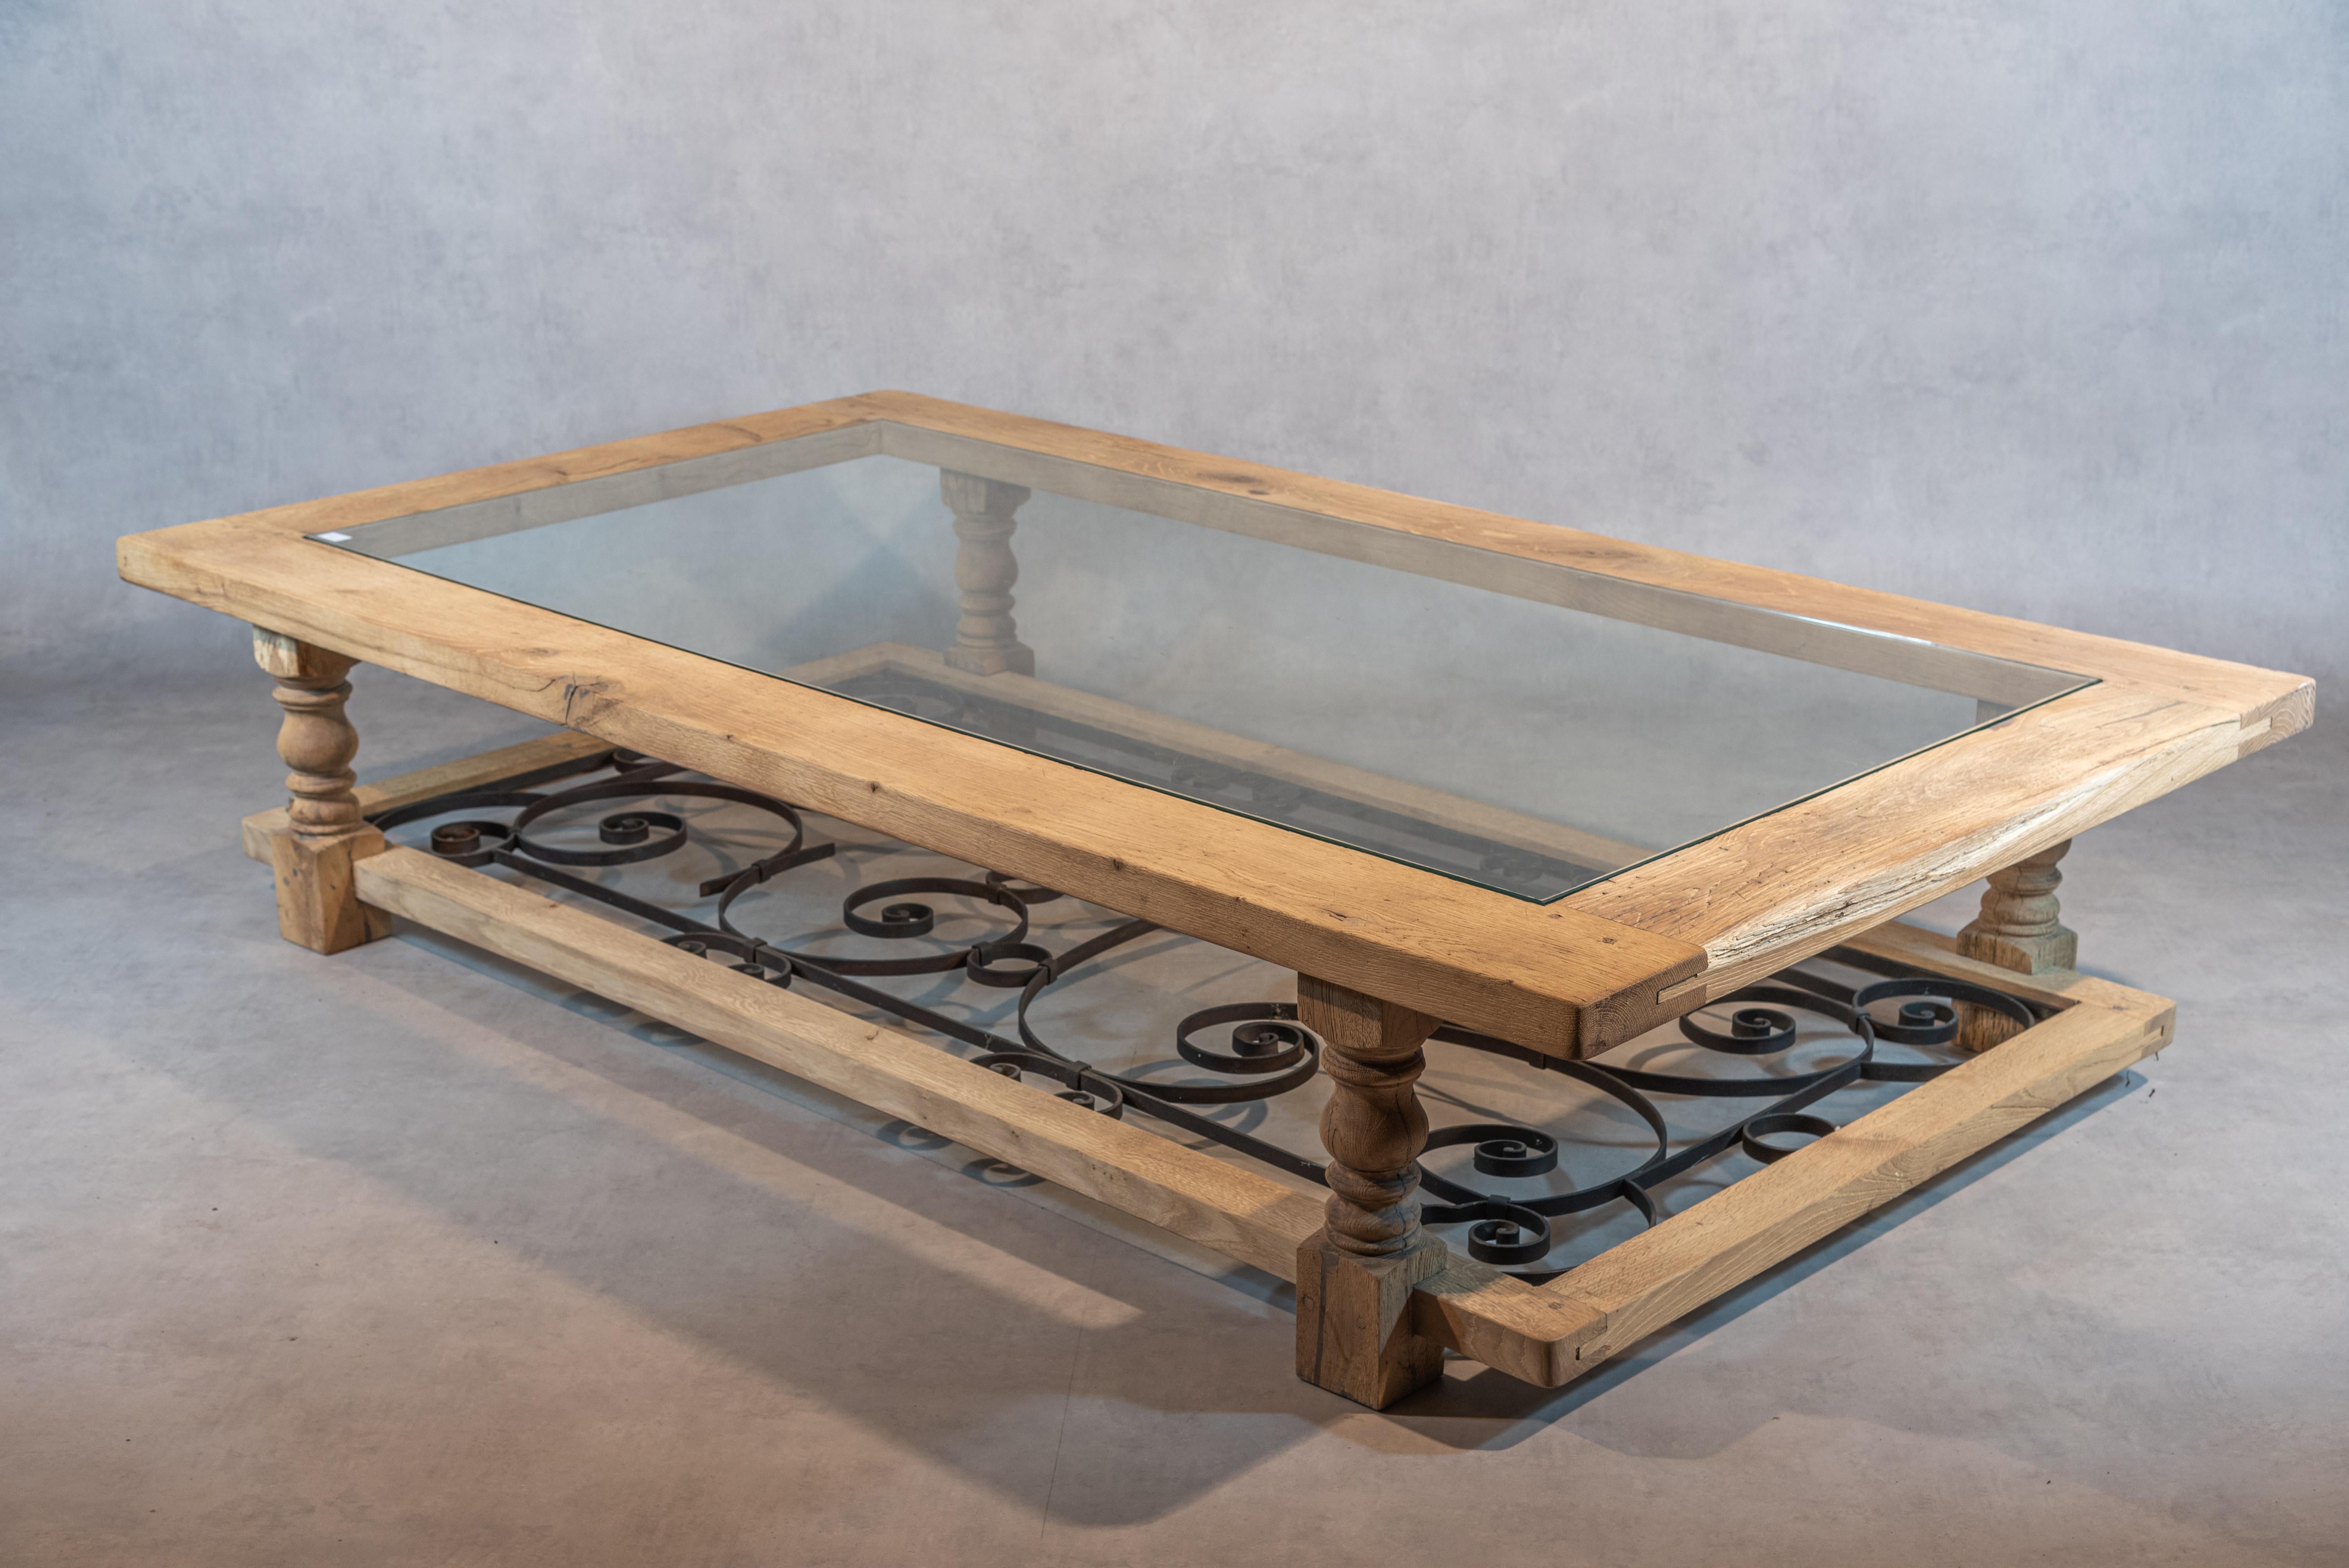 Cette superbe table basse en chêne blanchi de la fin du XXe siècle est une véritable œuvre d'art. Avec son design classique et sa construction robuste, elle est le complément parfait de toute décoration intérieure sophistiquée.

Le cadre en chêne